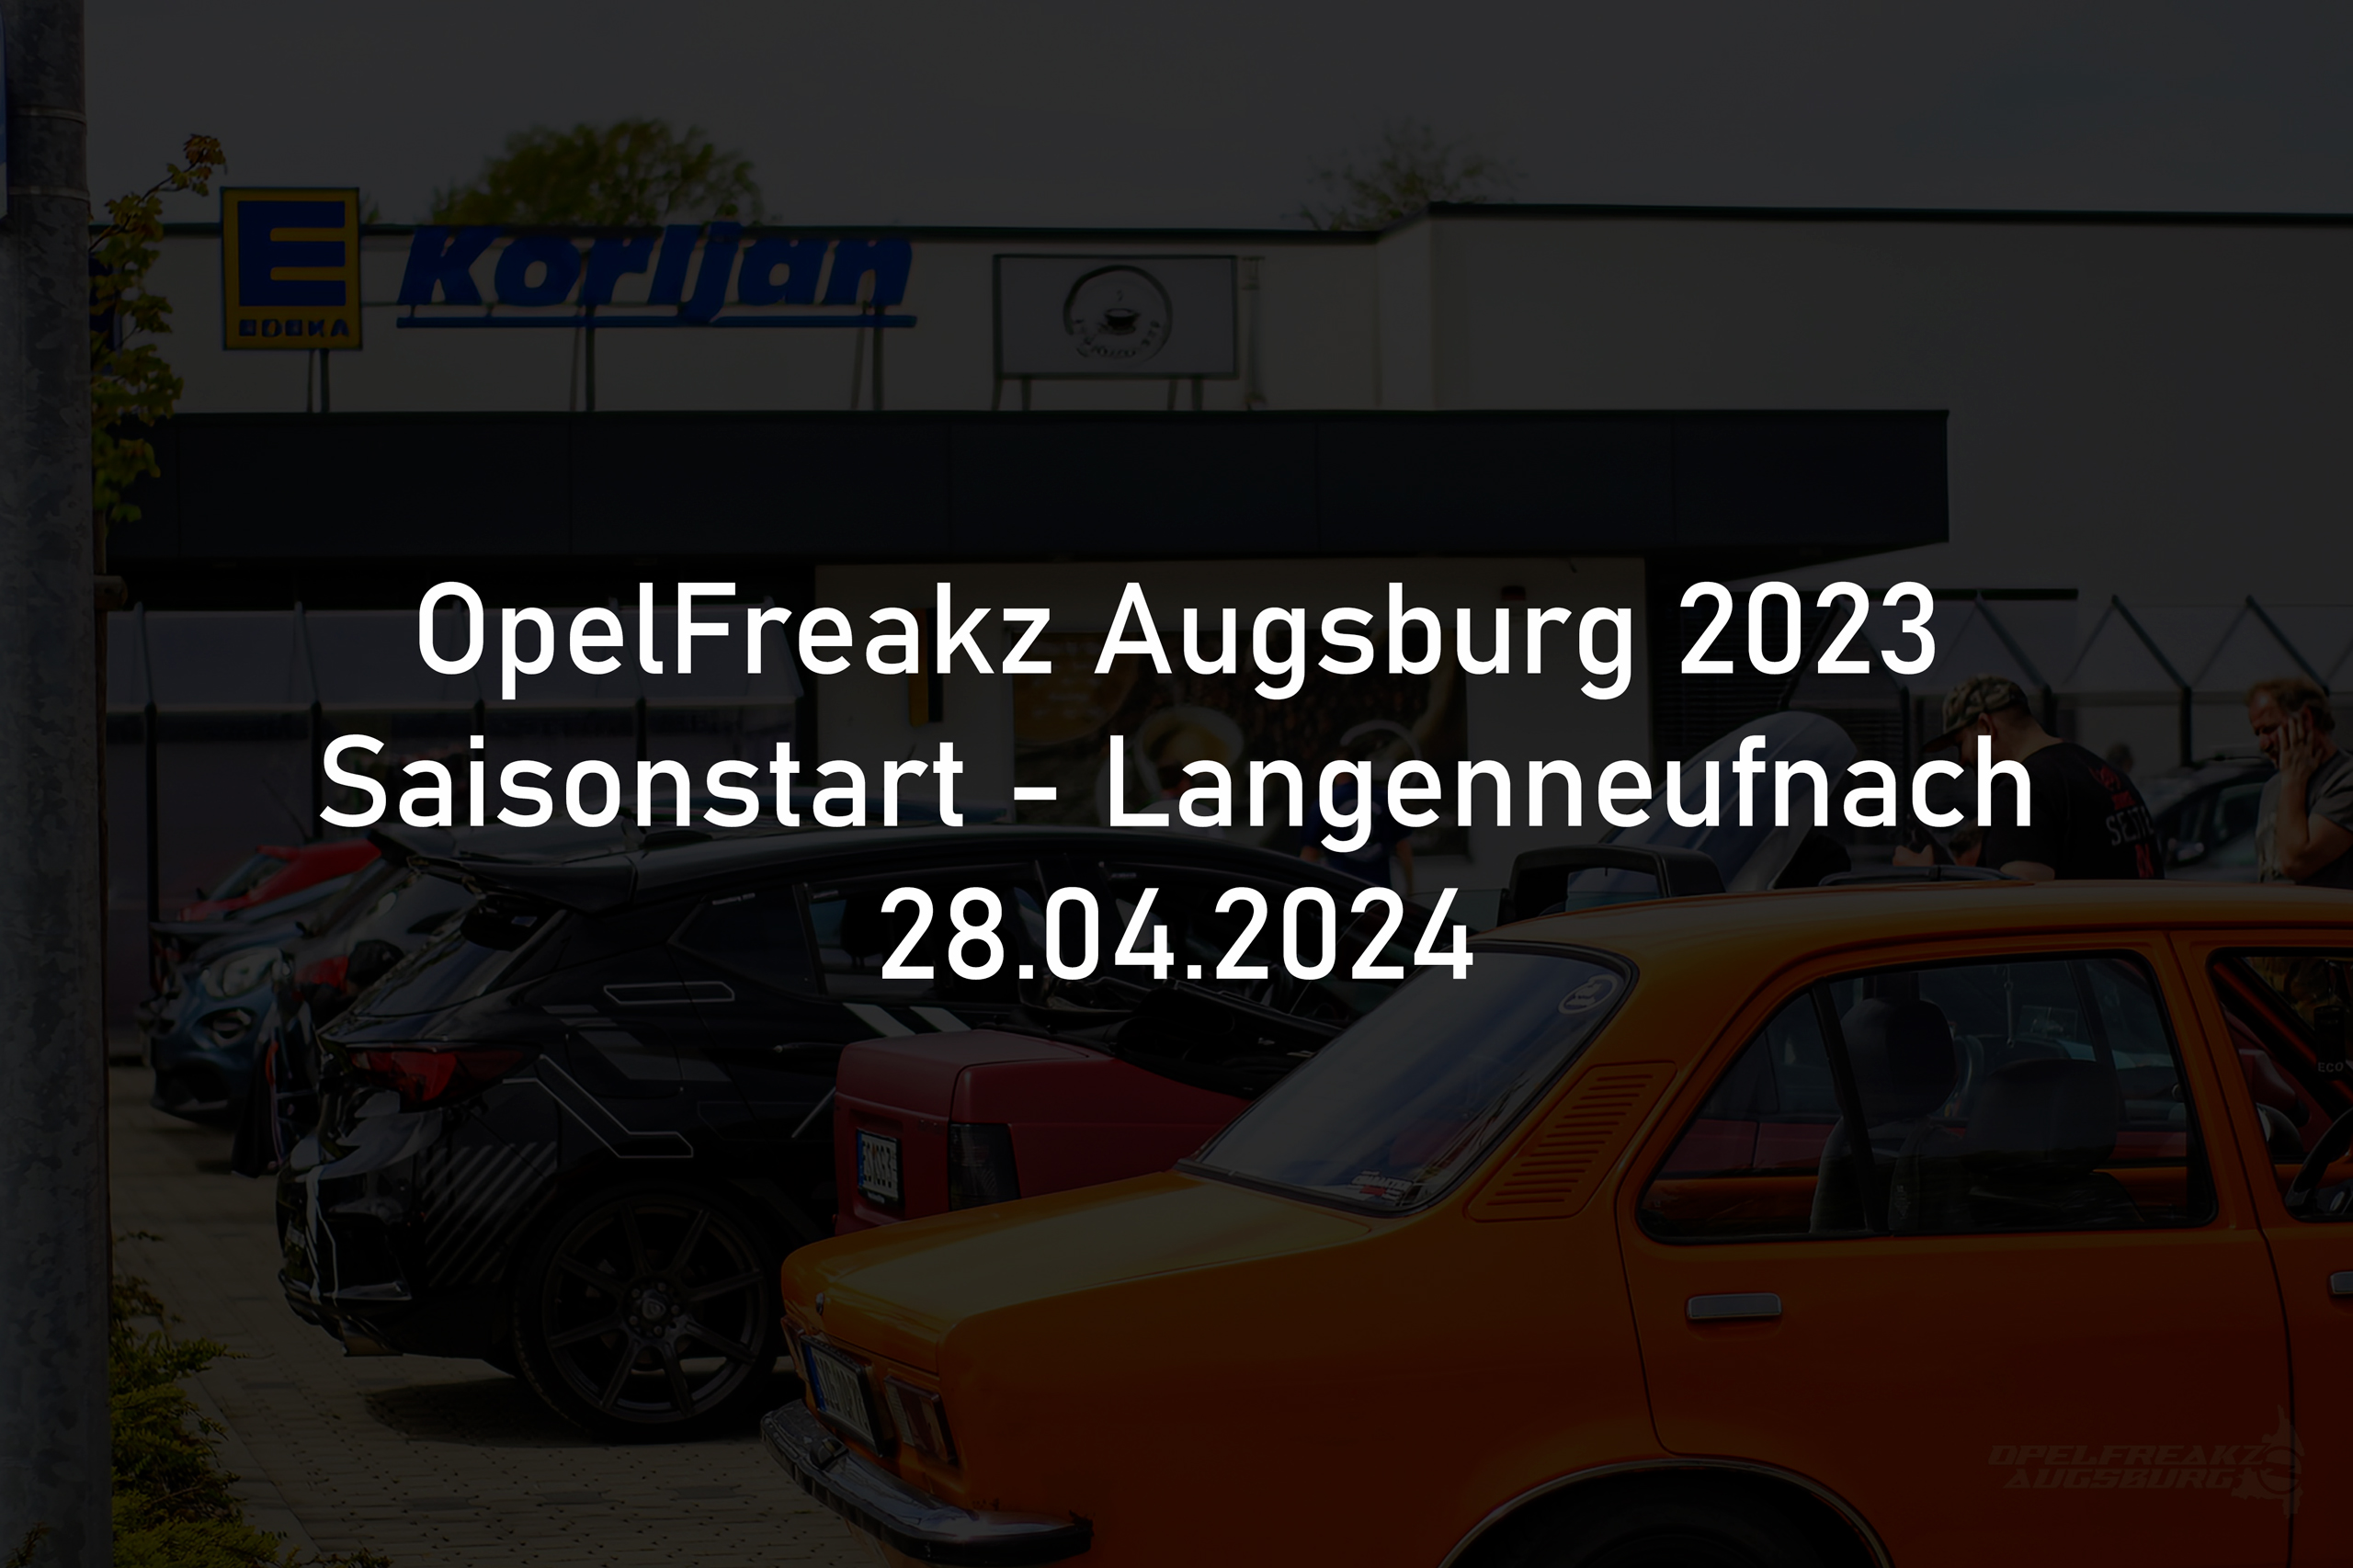 Saisonstart OpelFreakz Augsburg Langenneufnach 2024